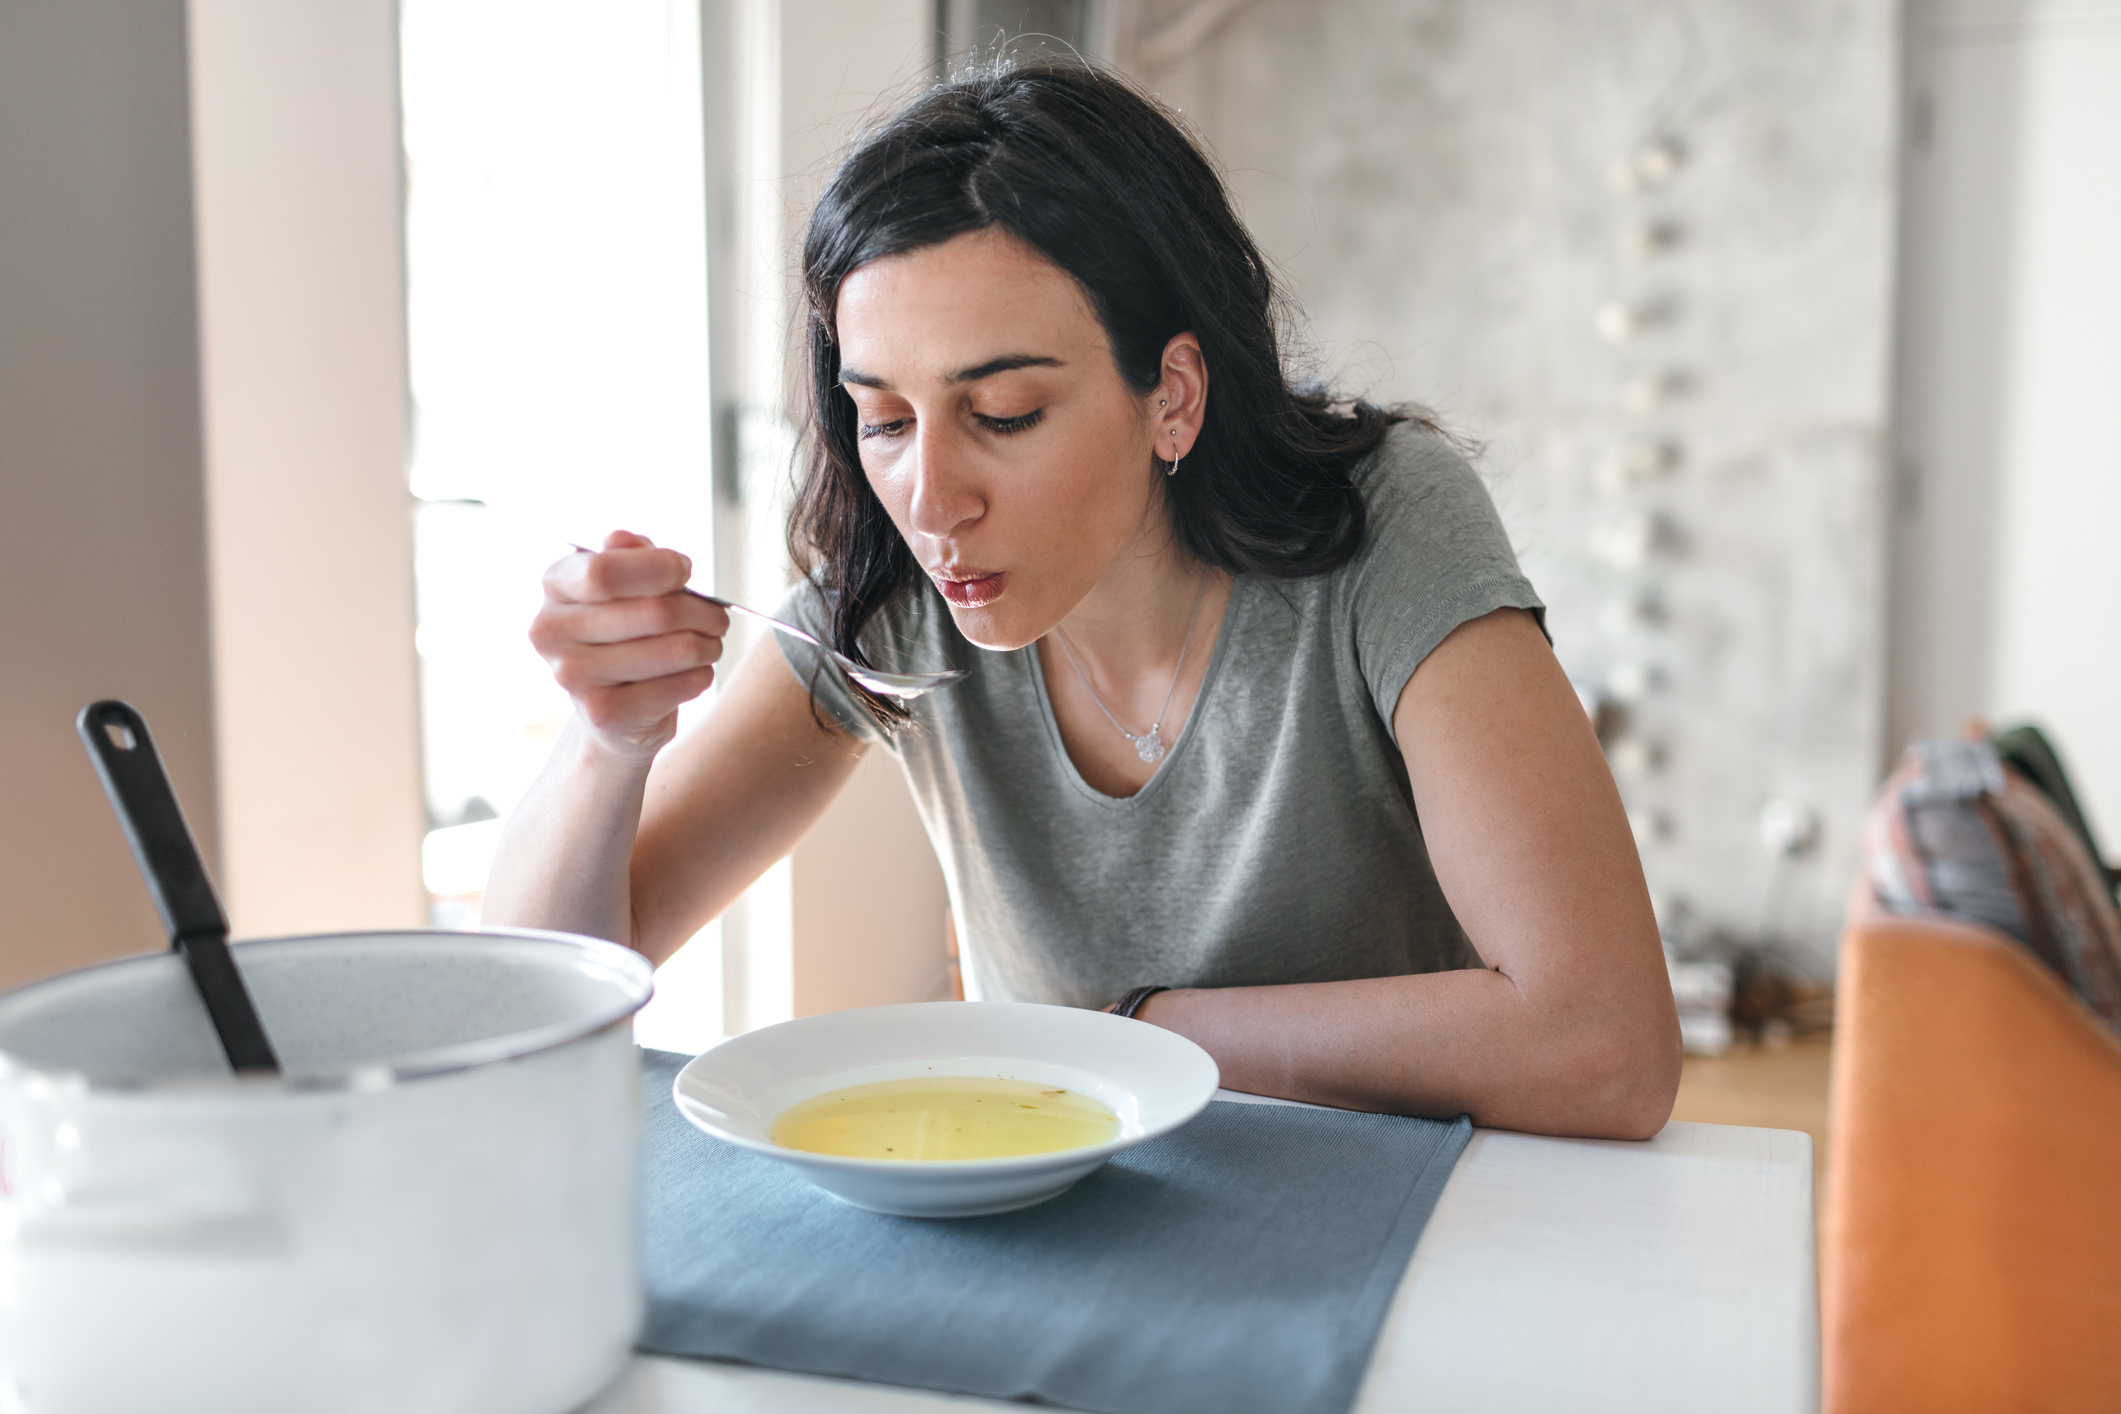 Популярный среди украинцев суп назвали опасным, ведь он провоцирует отравление у 62% людей